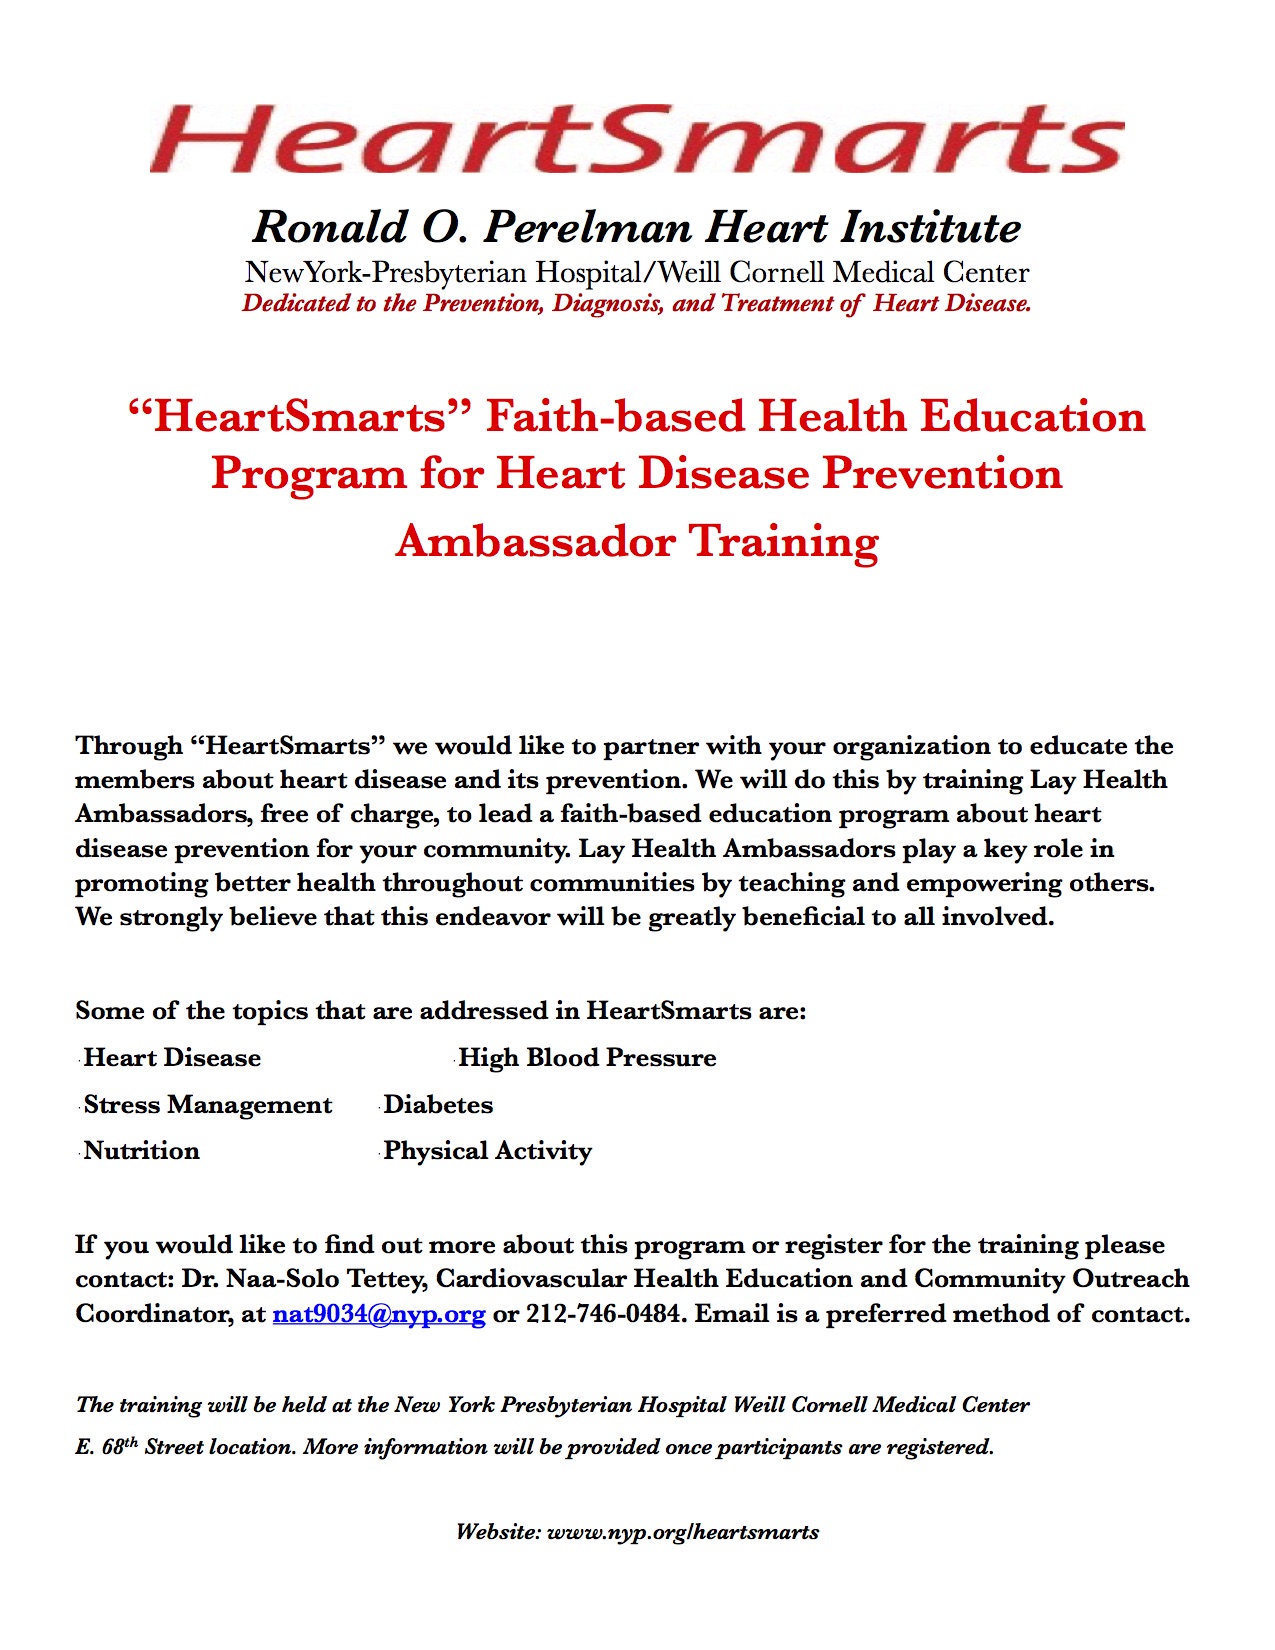 Heart Smarts Ambassador Training Main Flier 3-15